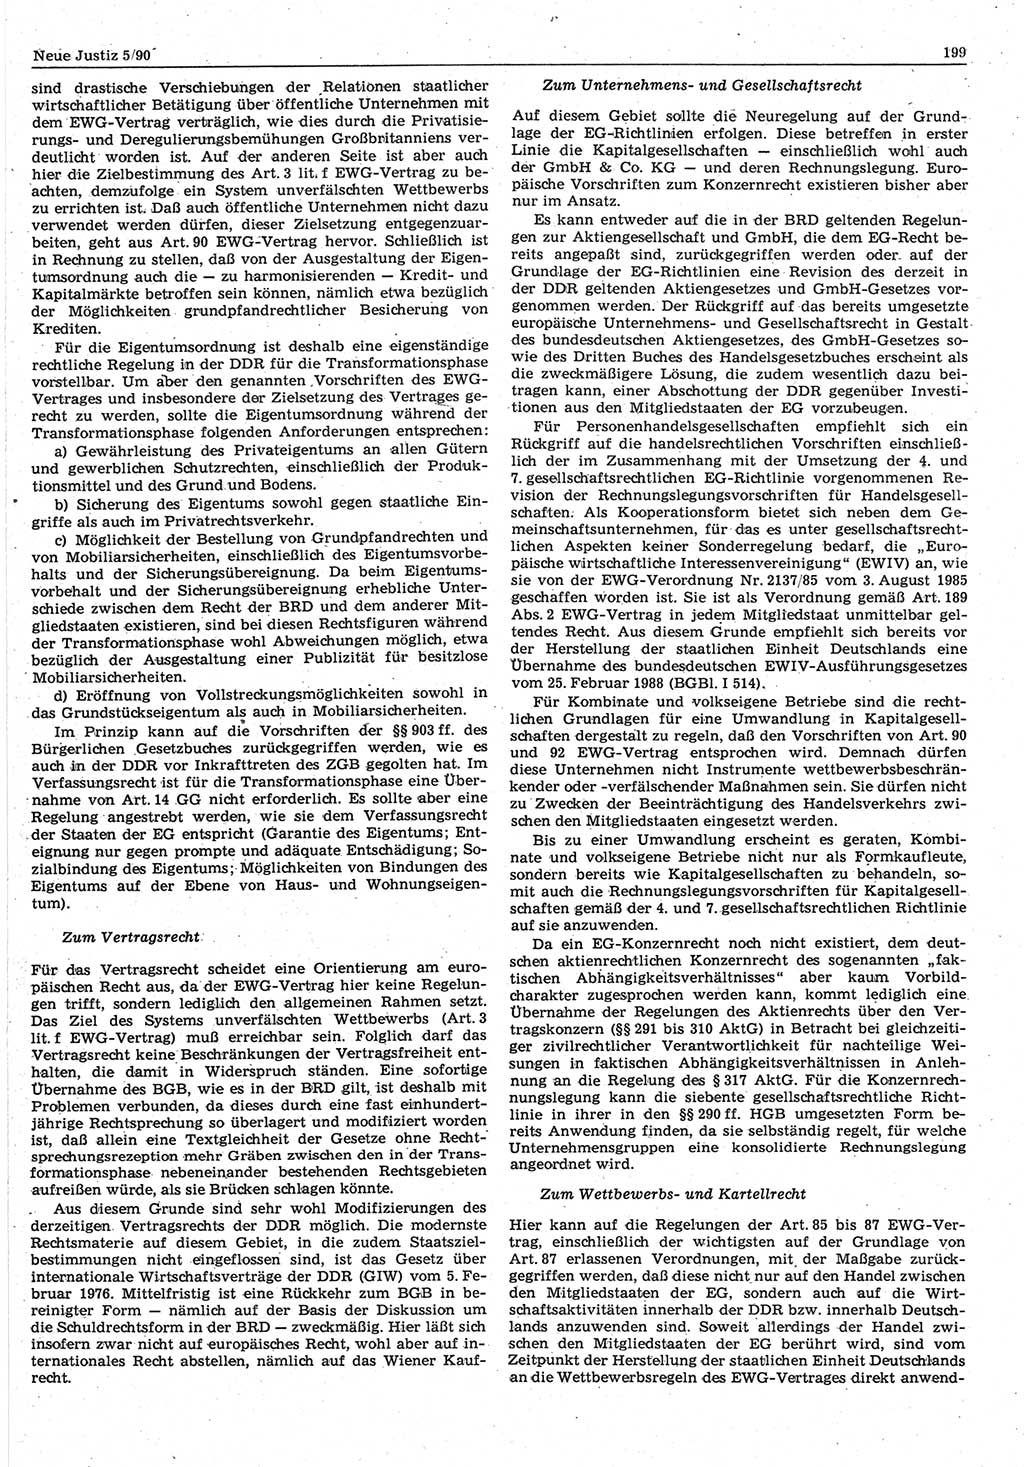 Neue Justiz (NJ), Zeitschrift für Rechtsetzung und Rechtsanwendung [Deutsche Demokratische Republik (DDR)], 44. Jahrgang 1990, Seite 199 (NJ DDR 1990, S. 199)